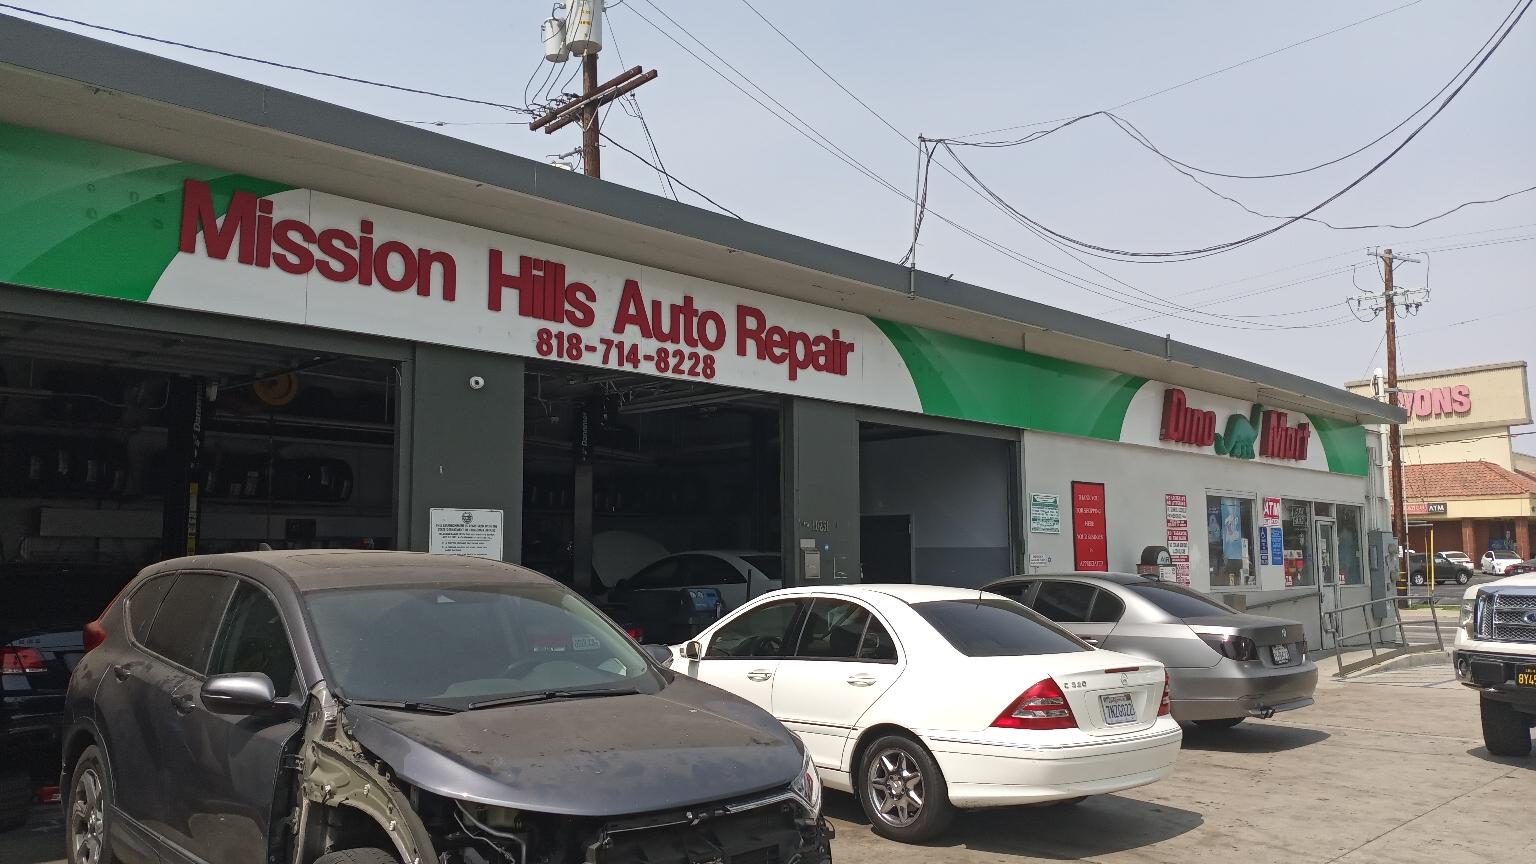 Mission Hills Auto Repair